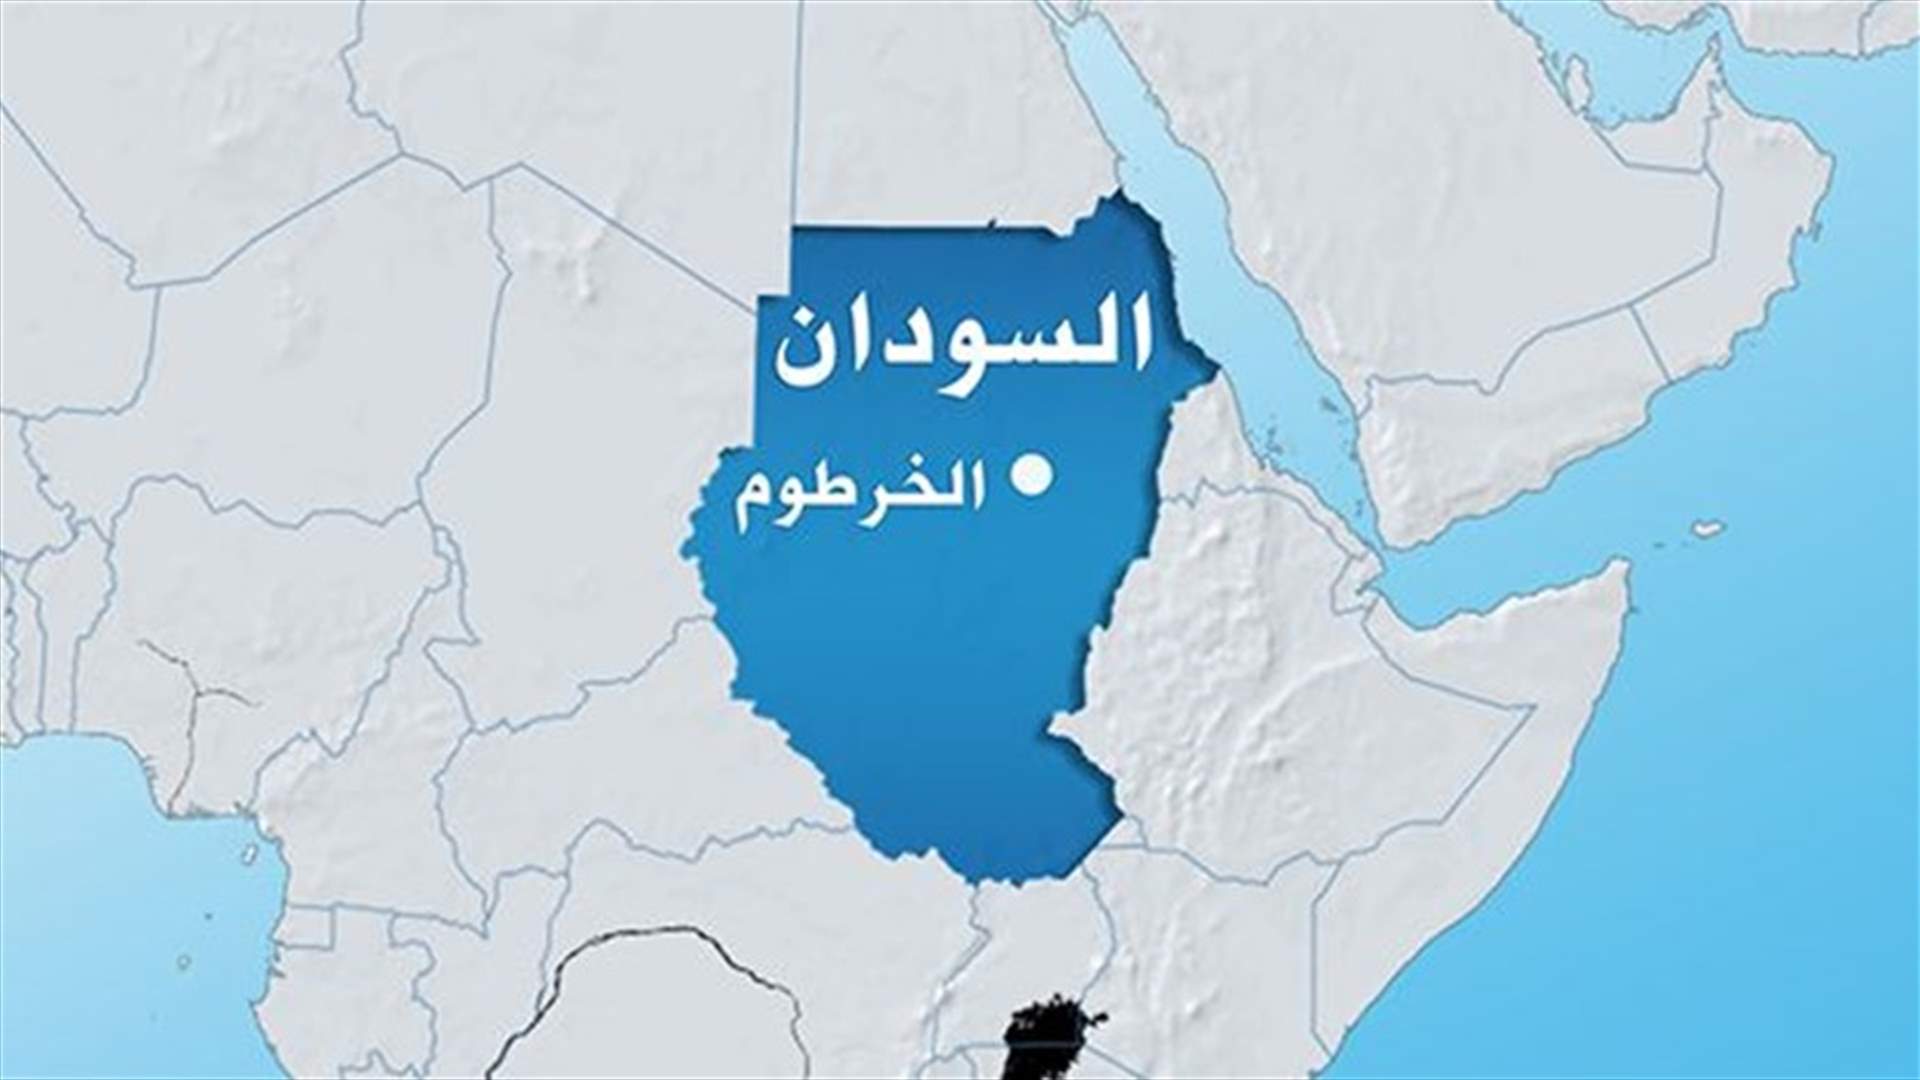 الخرطوم تدعو الى التحقيق في قتل مواطنيها في جنوب السودان